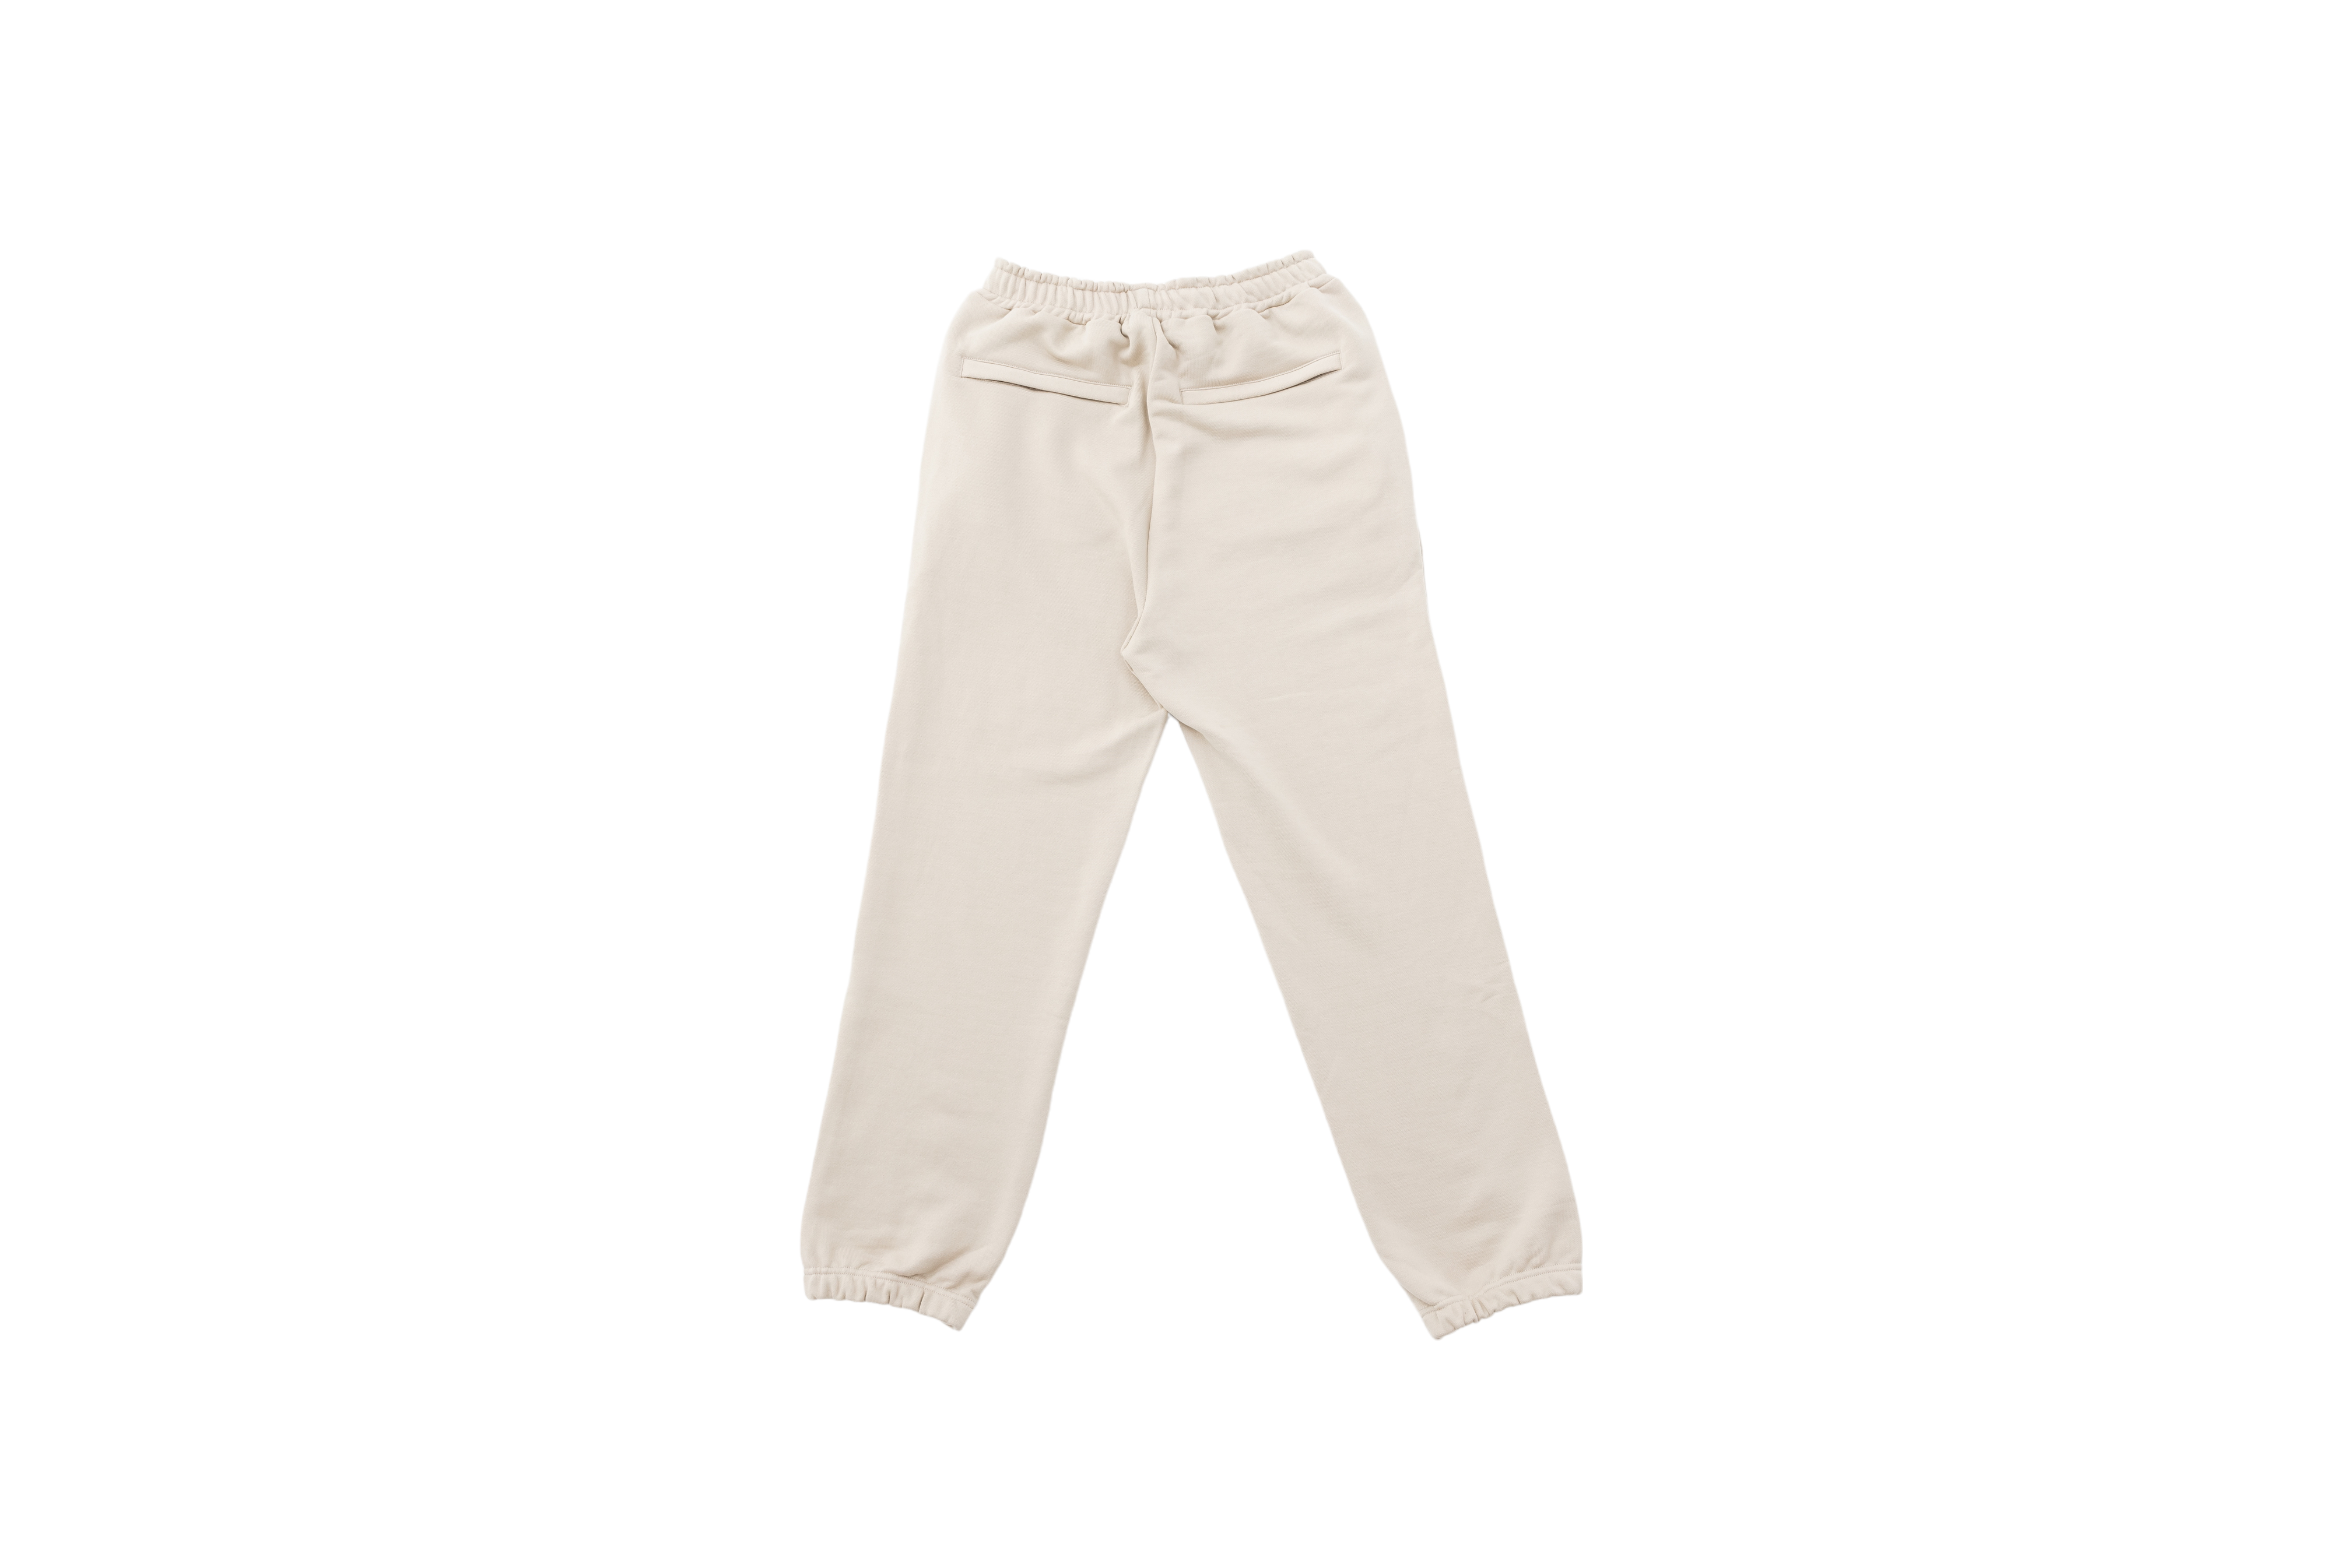 Low Crotch Sweatpants w/ Logo - Tan